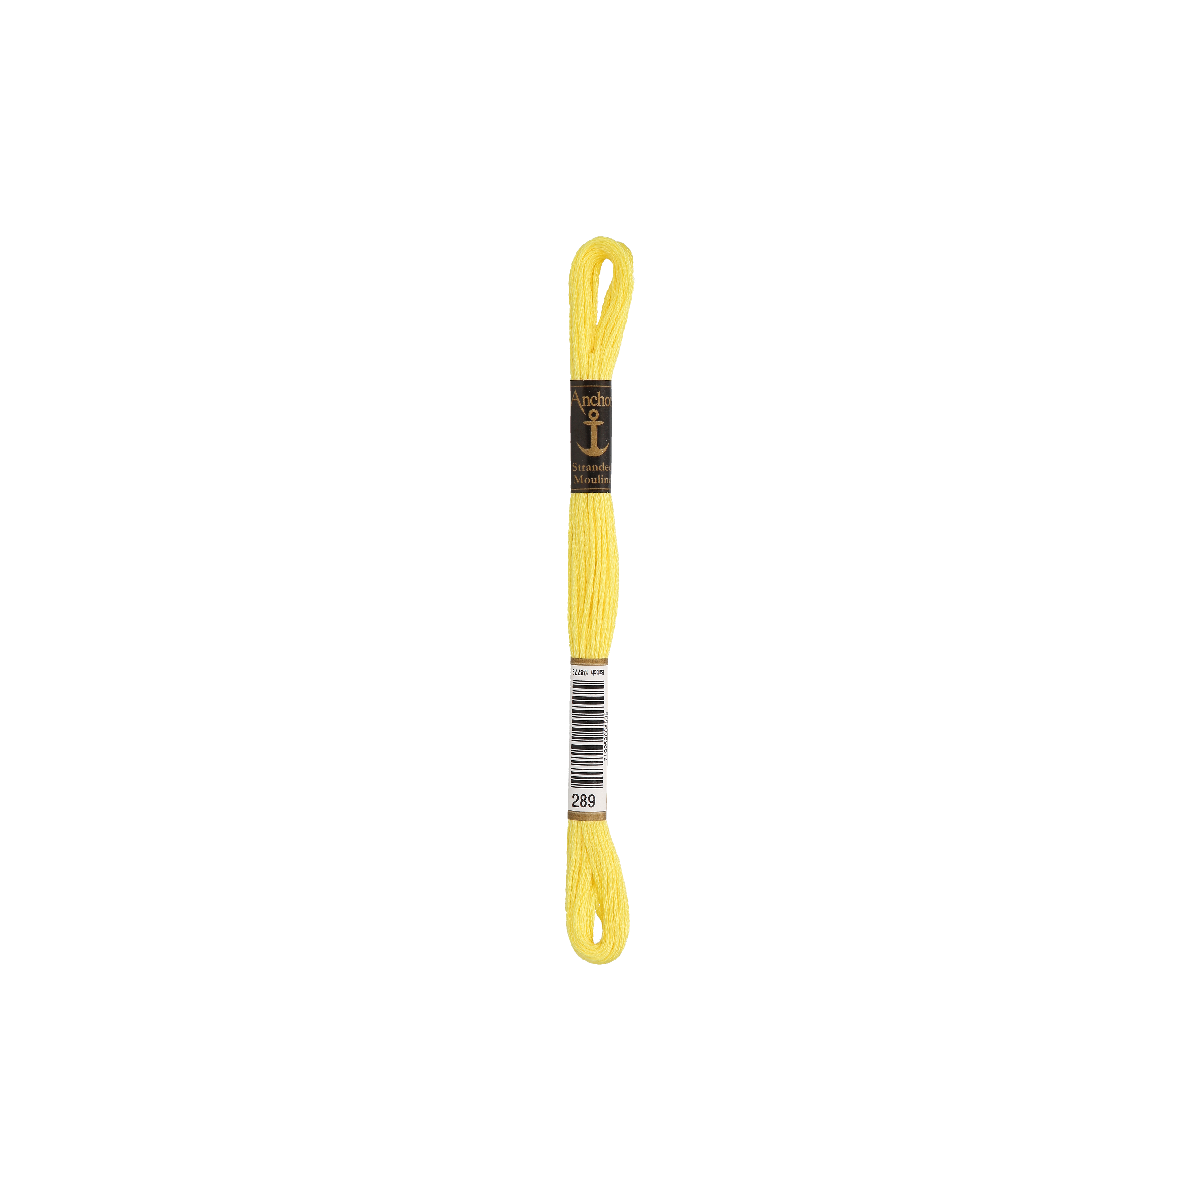 Anchor мулине 8m, канареечно-жёлтый, Хлопок,  цвет 289,...